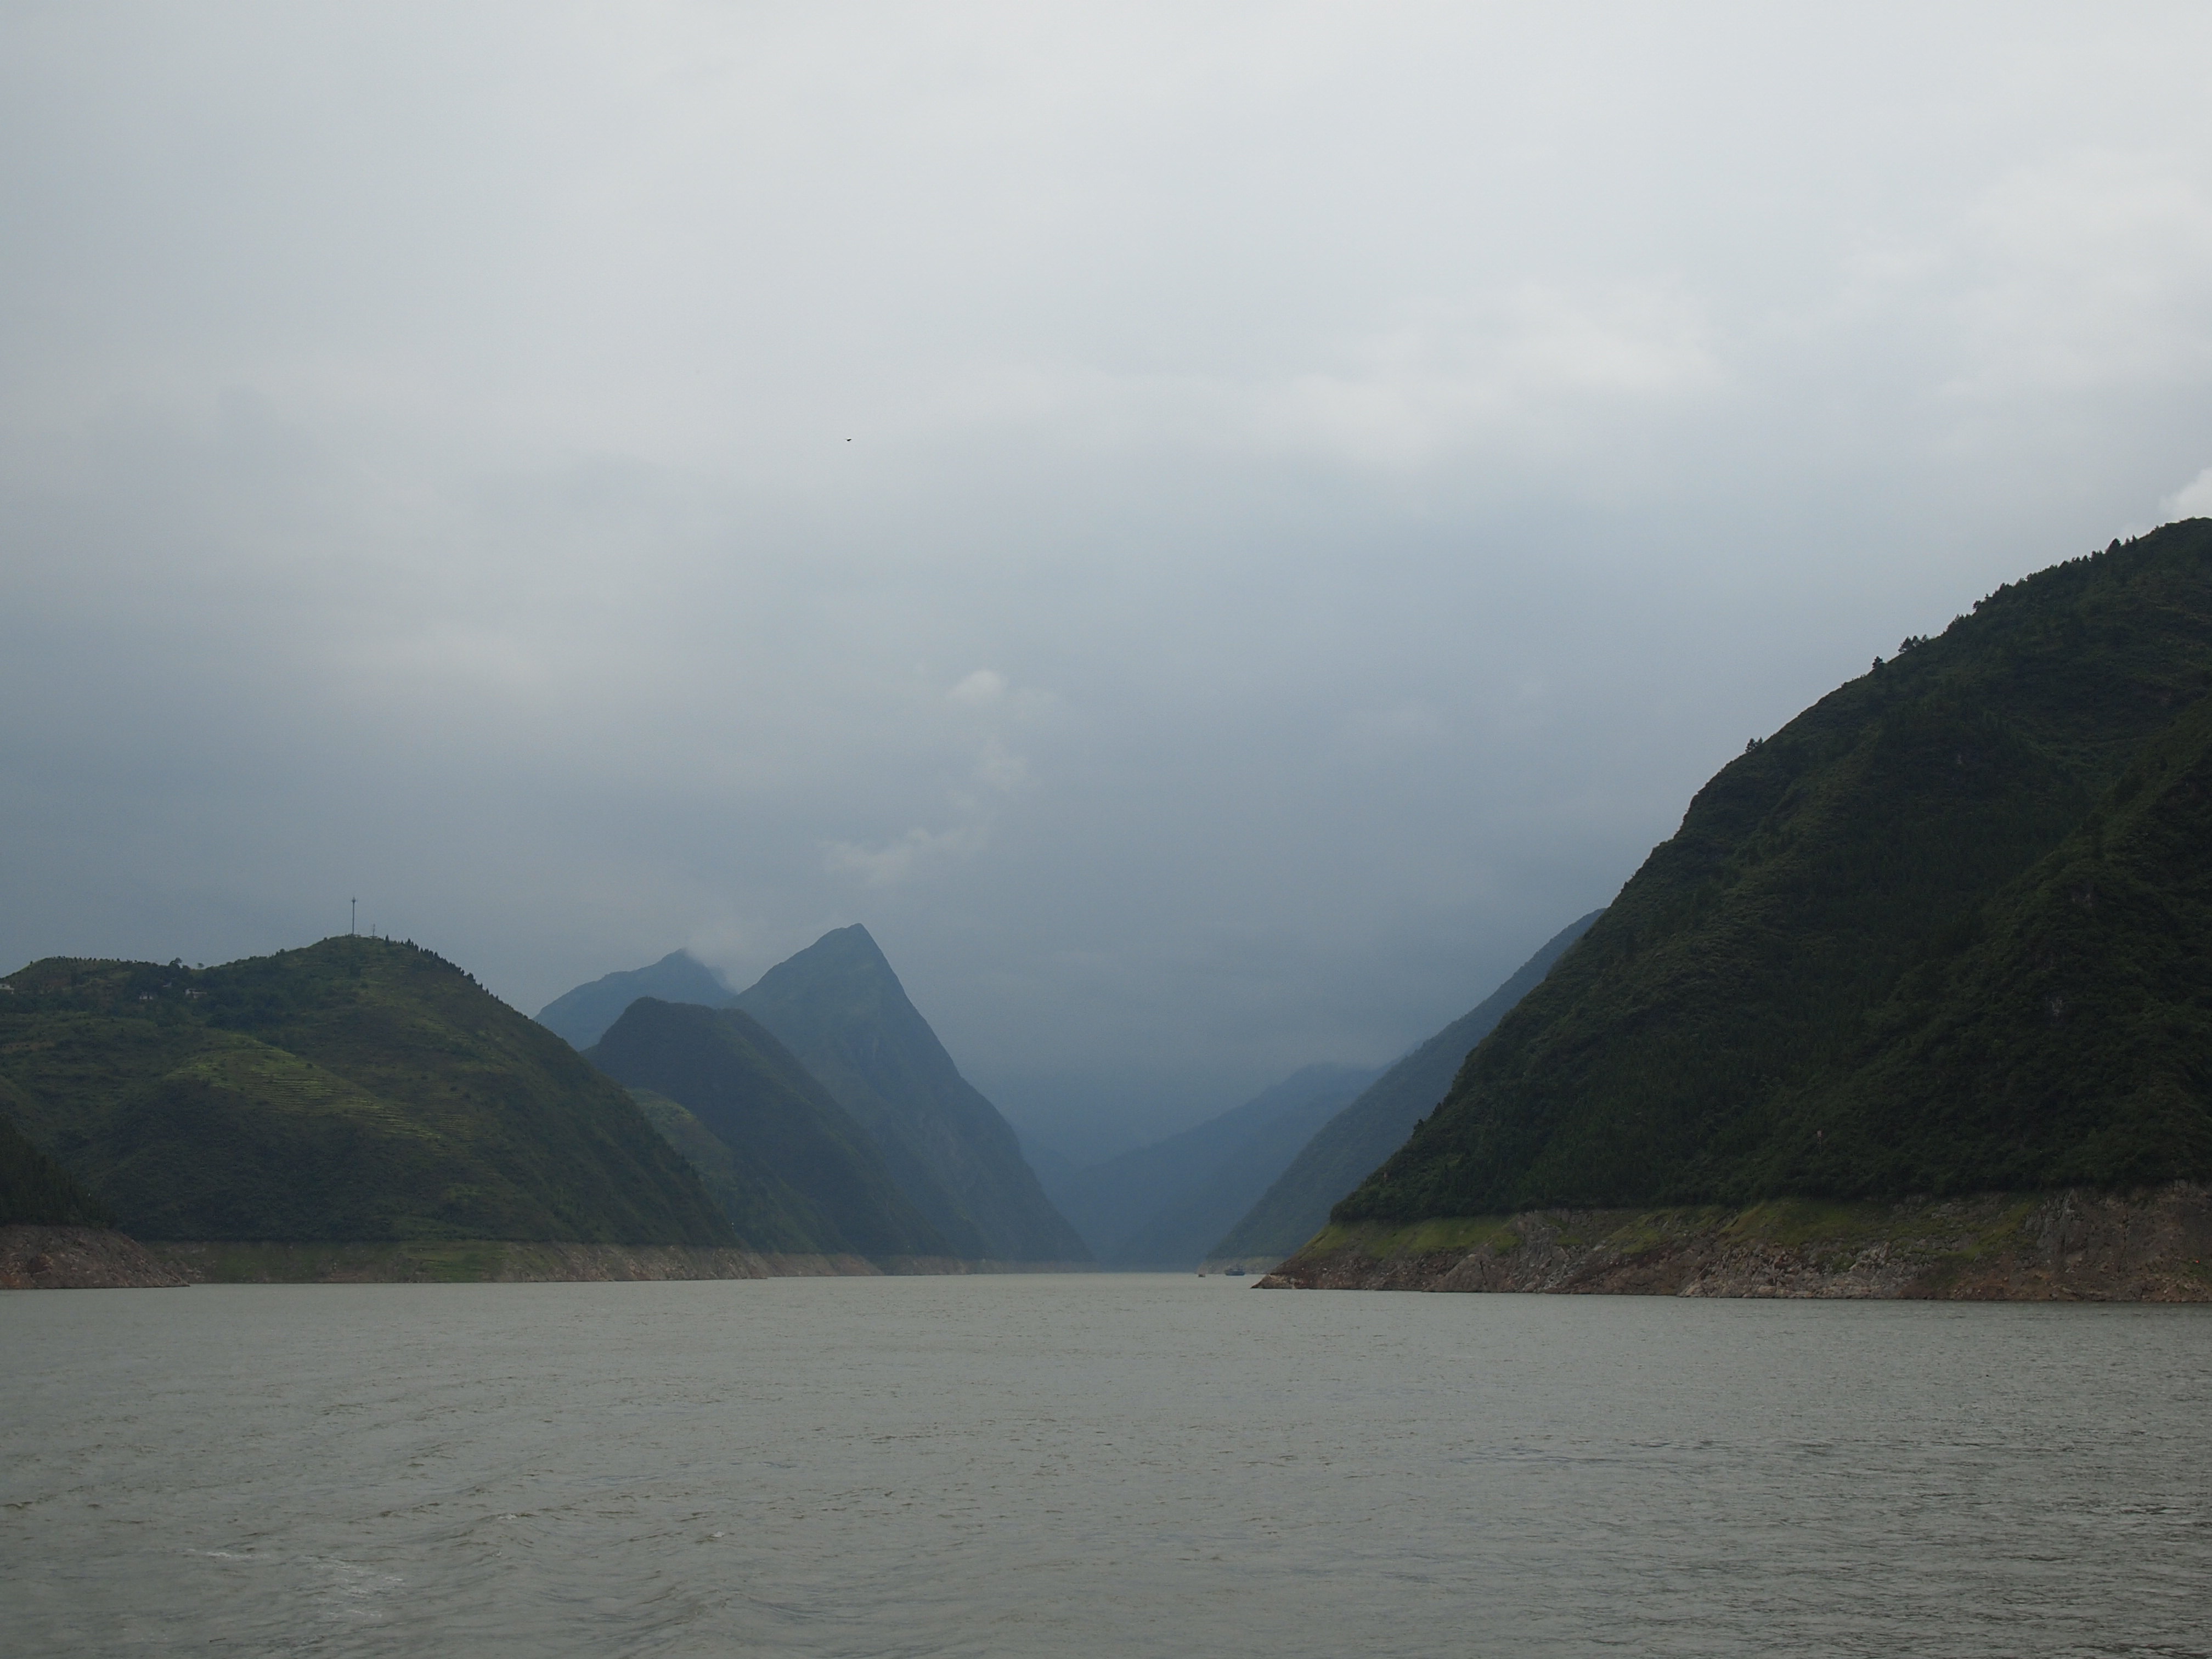 巫峡东起巴东县官渡口,西至巫山县城东大宁河,全长46公里,有大峡之